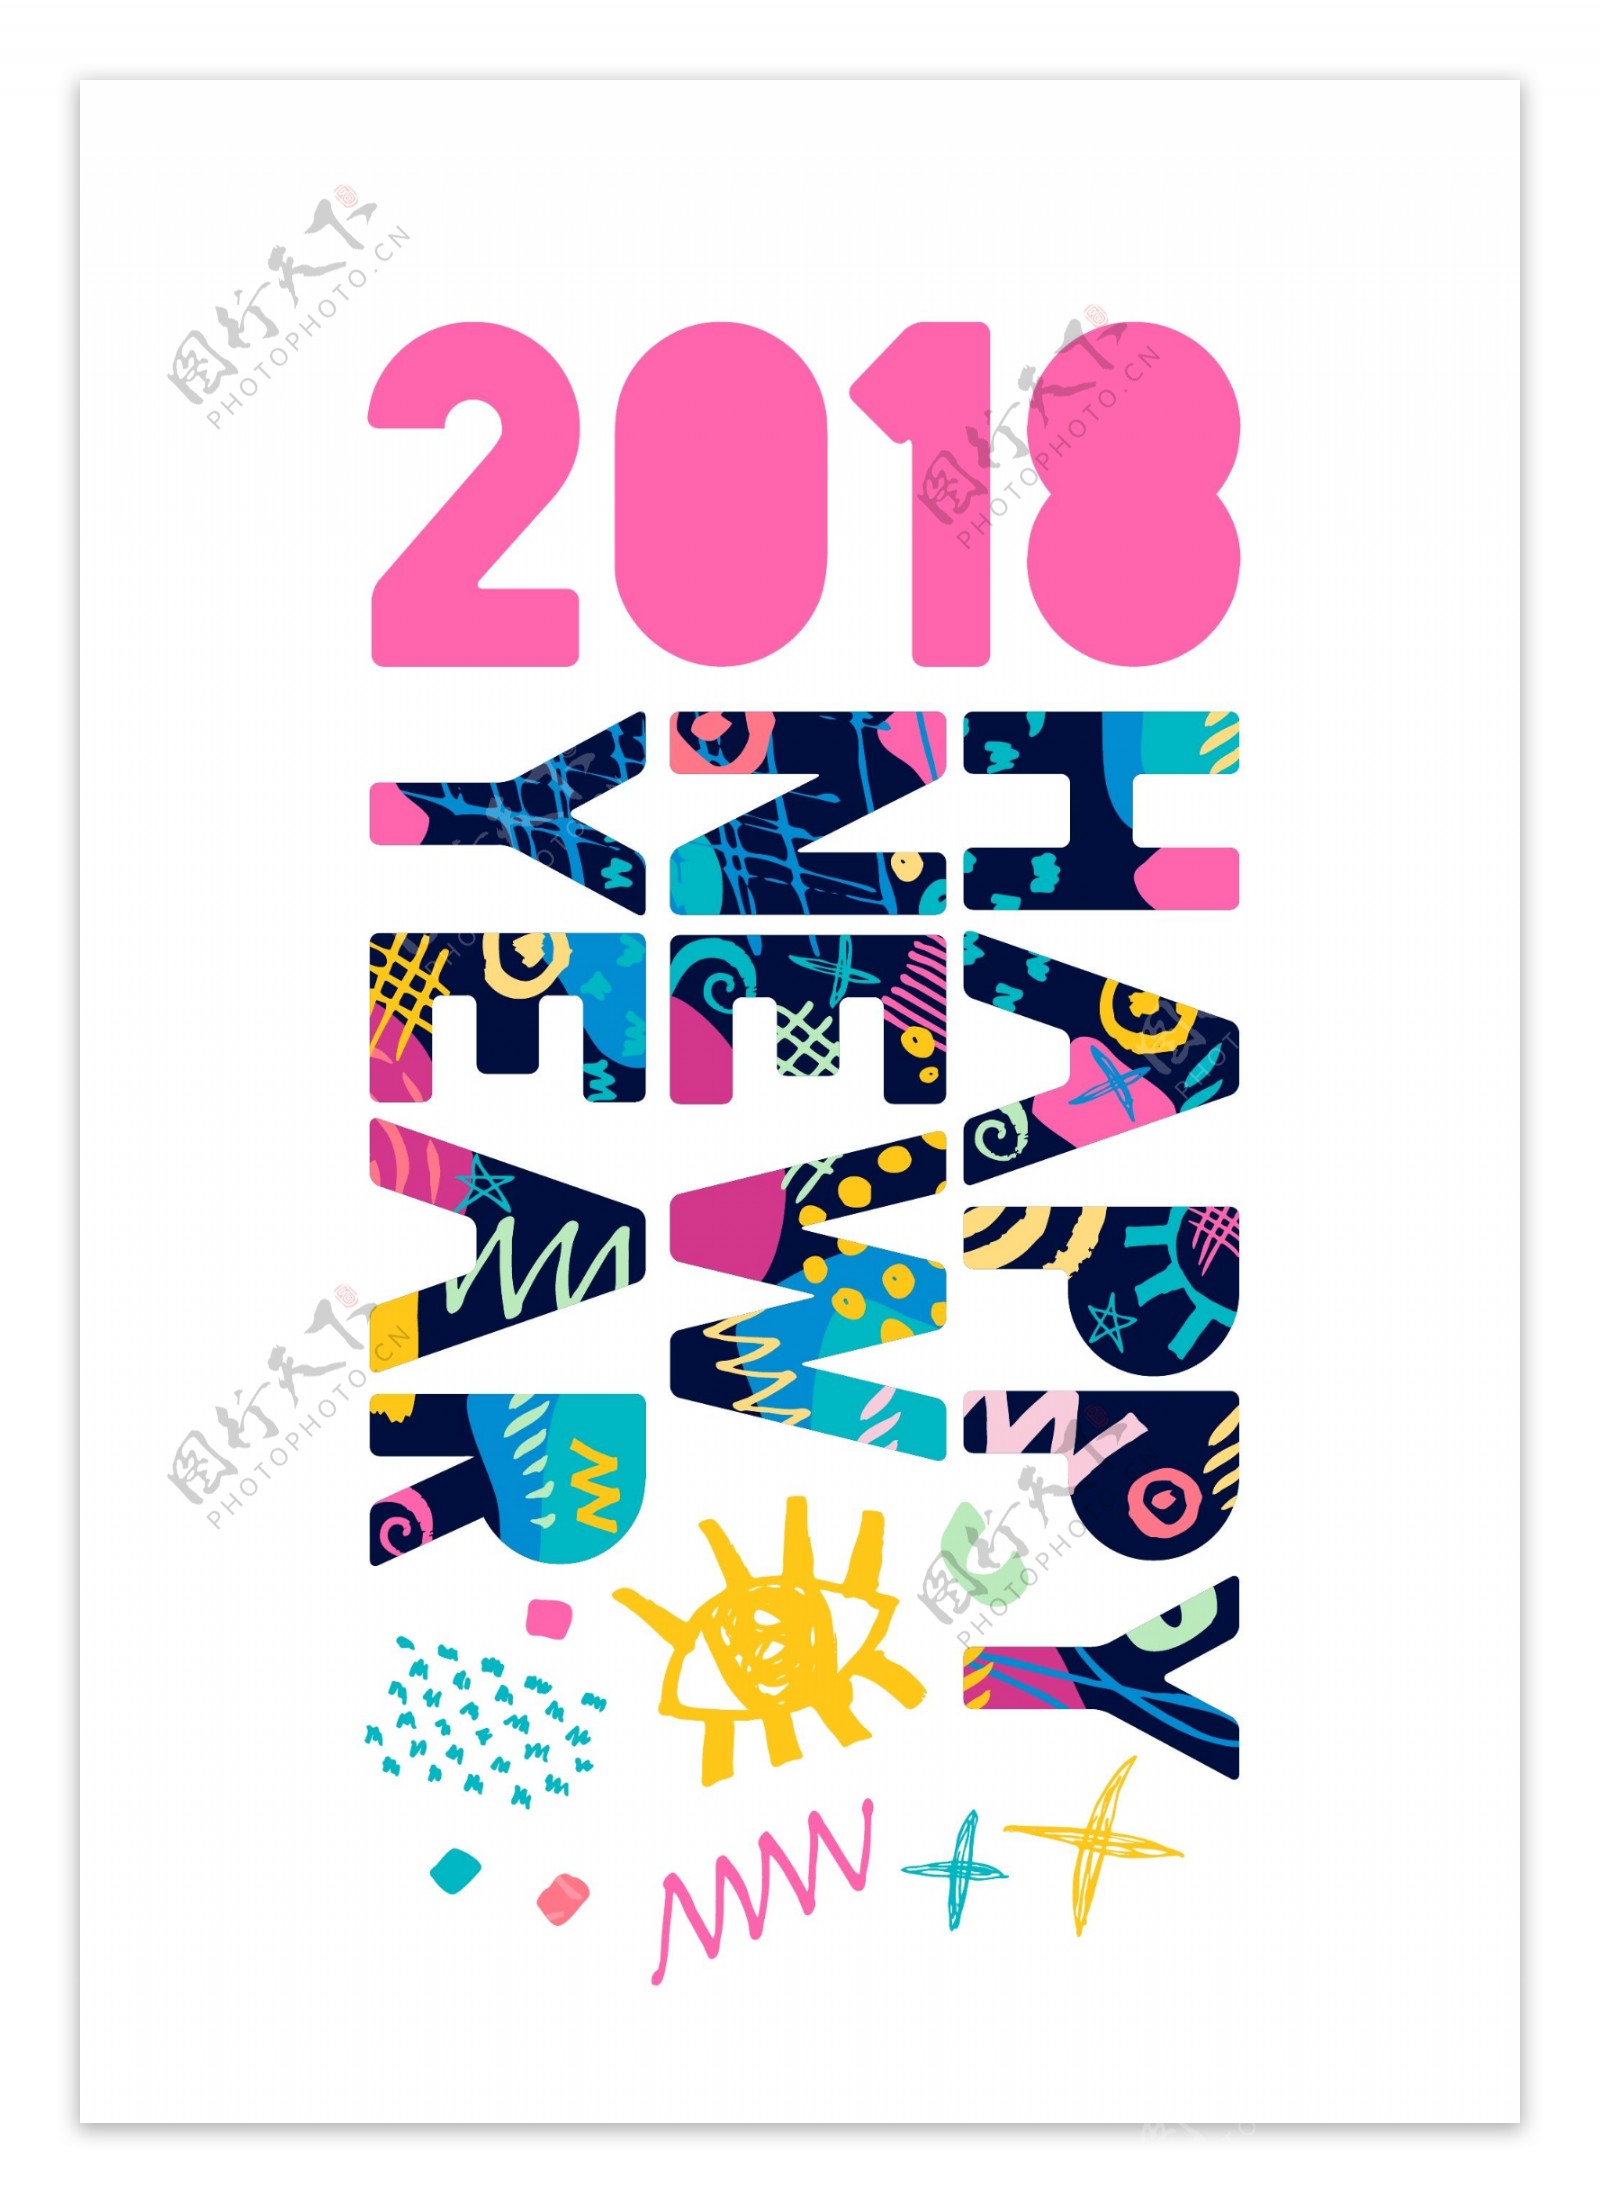 花纹英文2018年创意文字设计矢量素材2